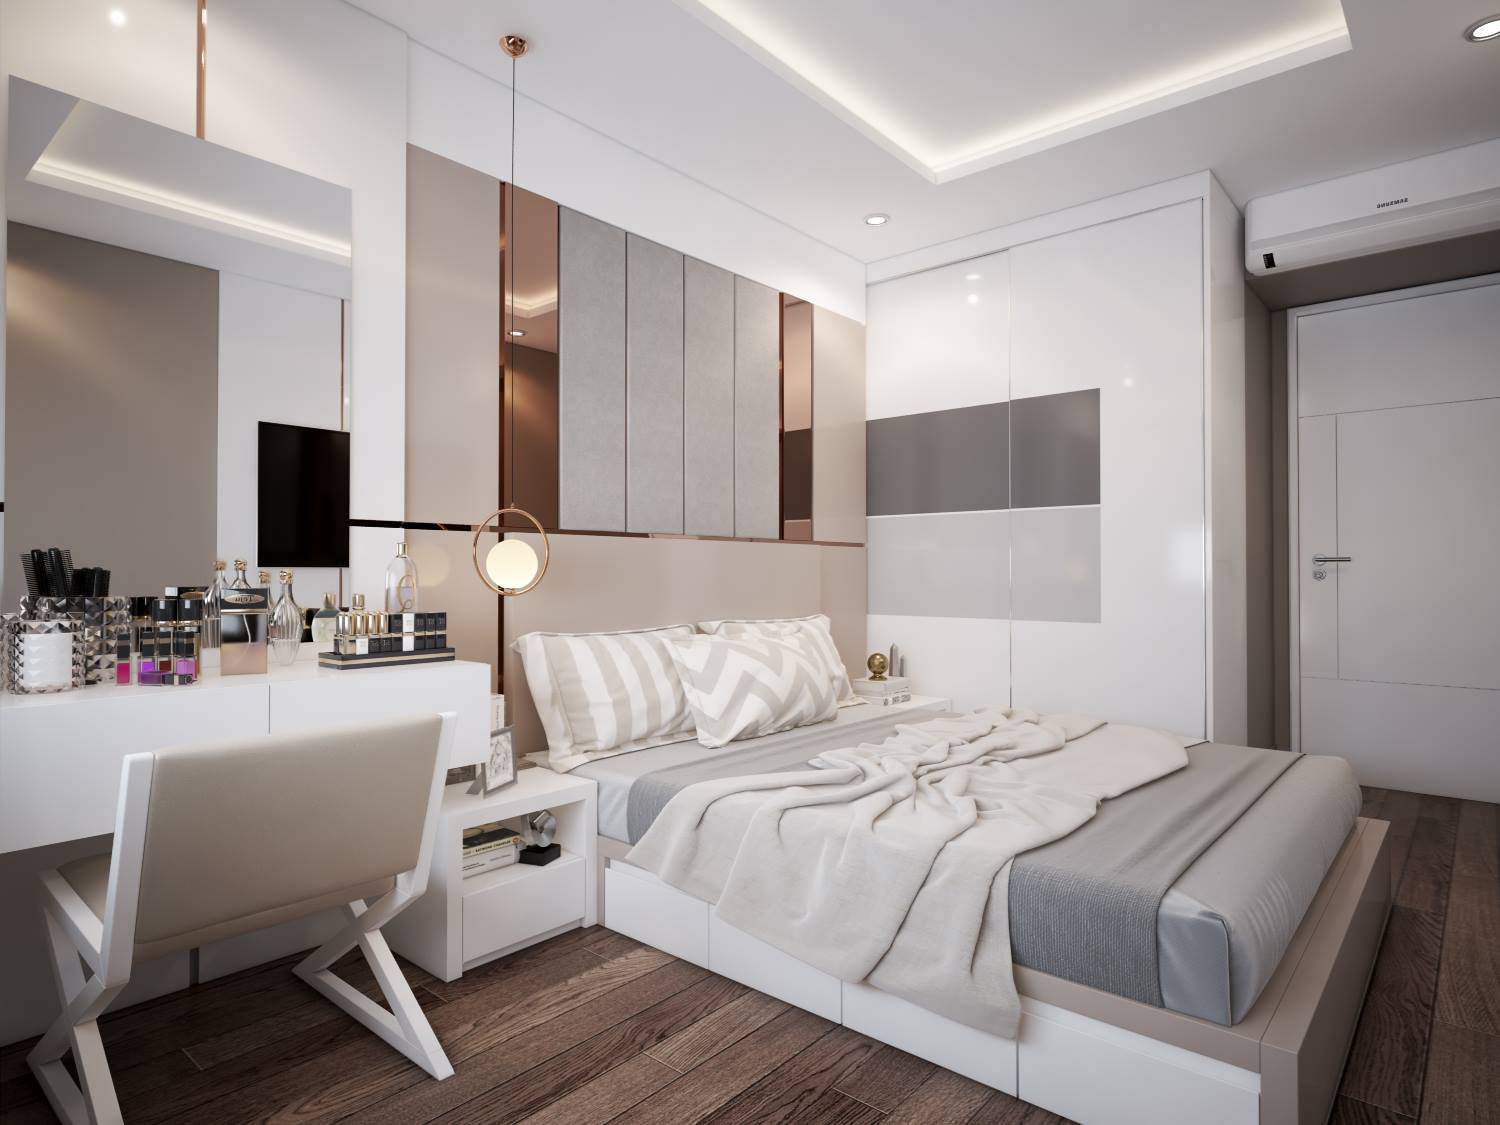 Ý tưởng thiết kế nội thất phòng ngủ diện tích 15m² với tổng chi phí dưới 20 triệu đồng - Ảnh 7.